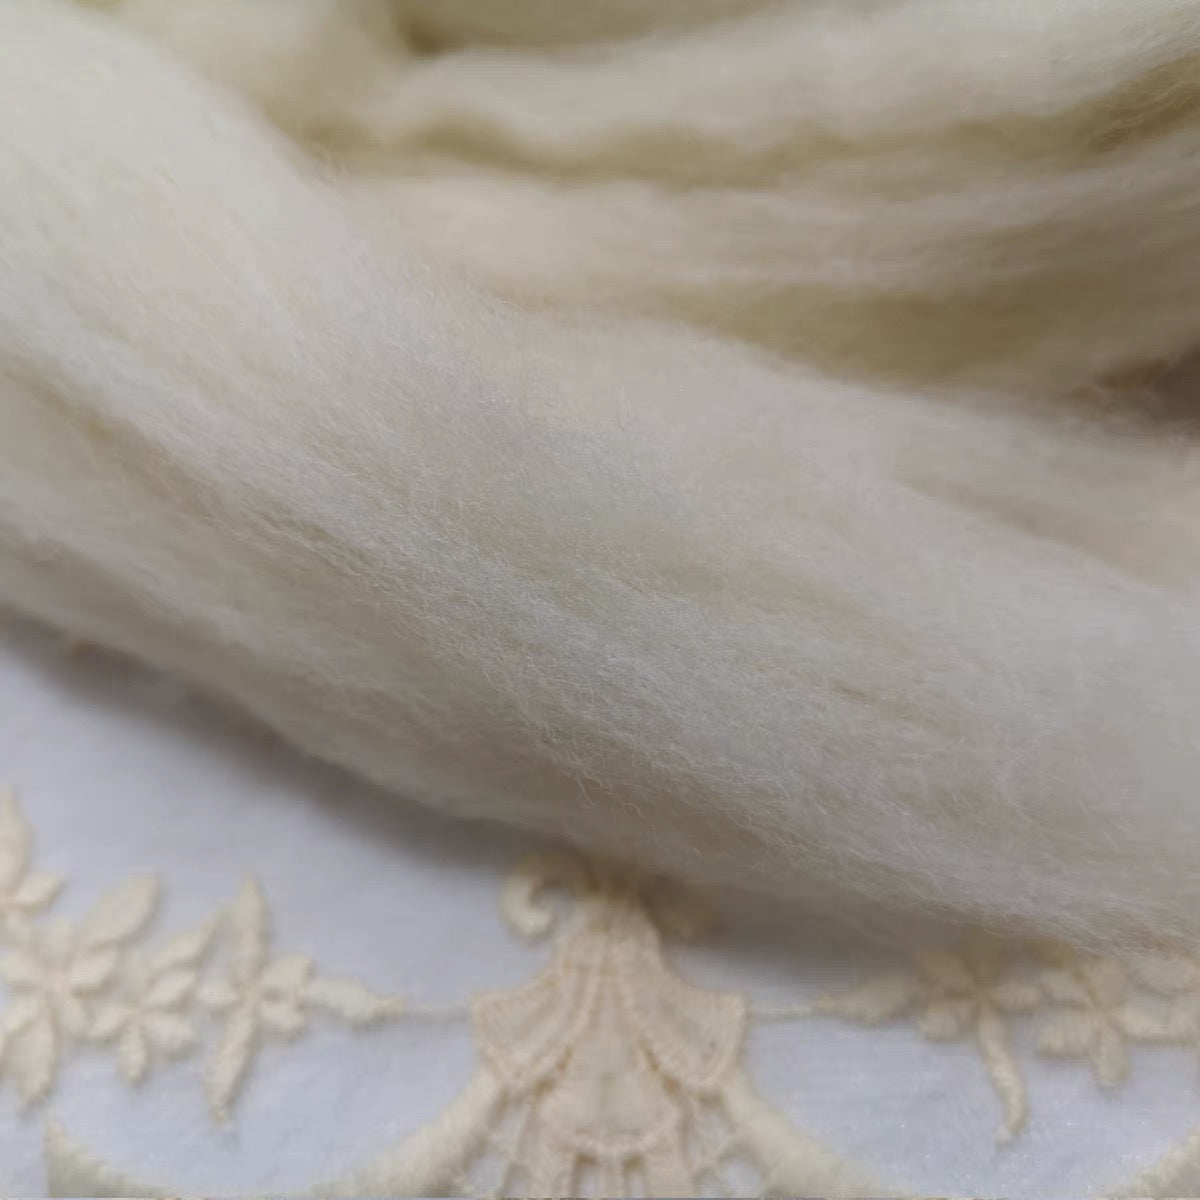 Needle felting raw-color wool   for for custom dyeing needle felting,perfect for needle felting/wet felting - 50g/100g/500g total